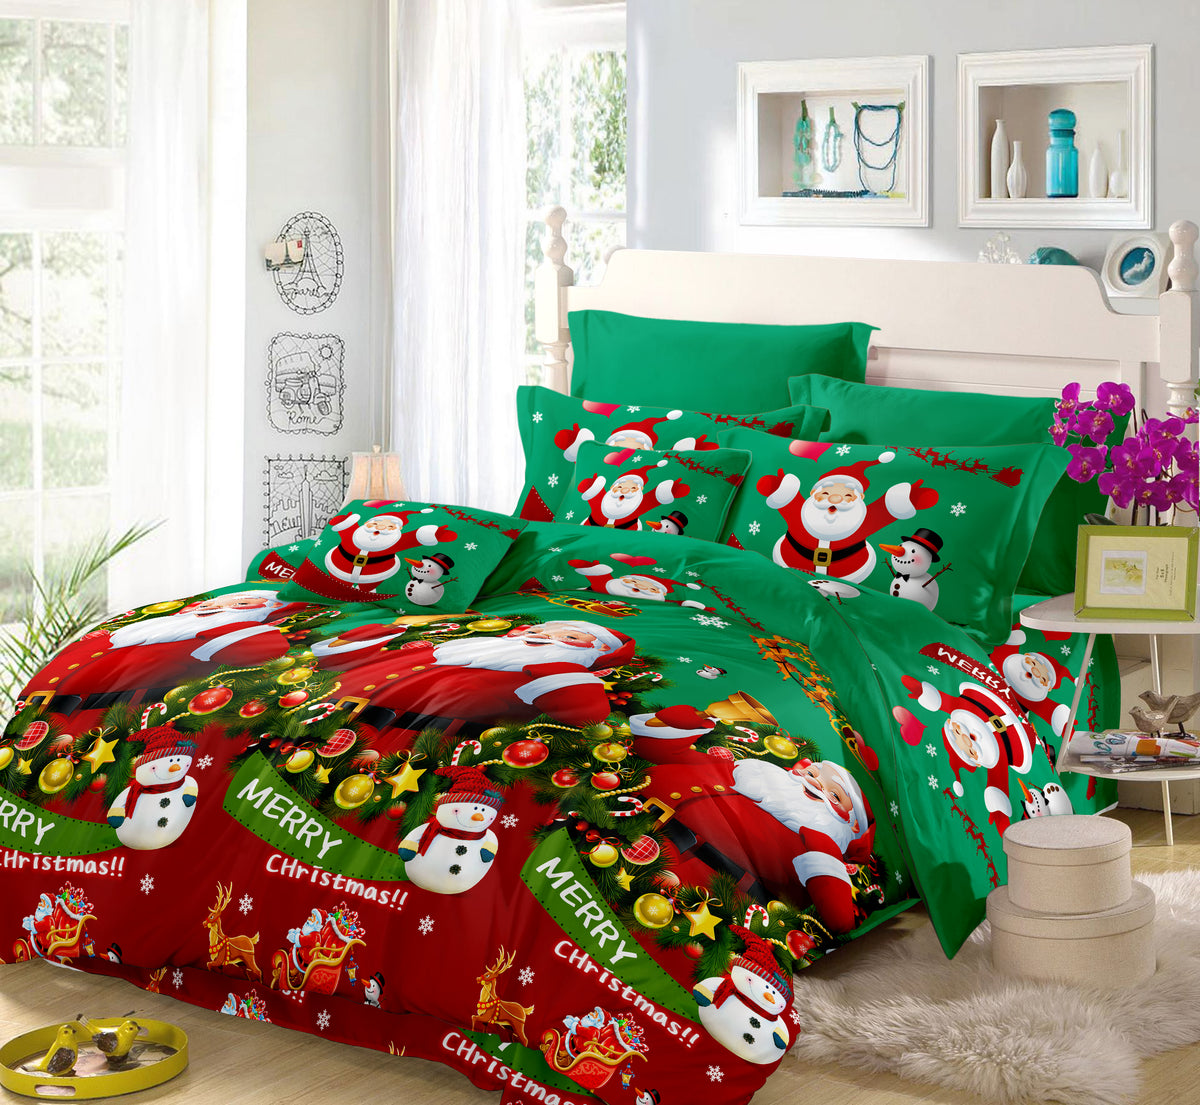 Festive Campervan Bedding Set Sleepdown Christmas Duvet Sets & Pillow Cases 